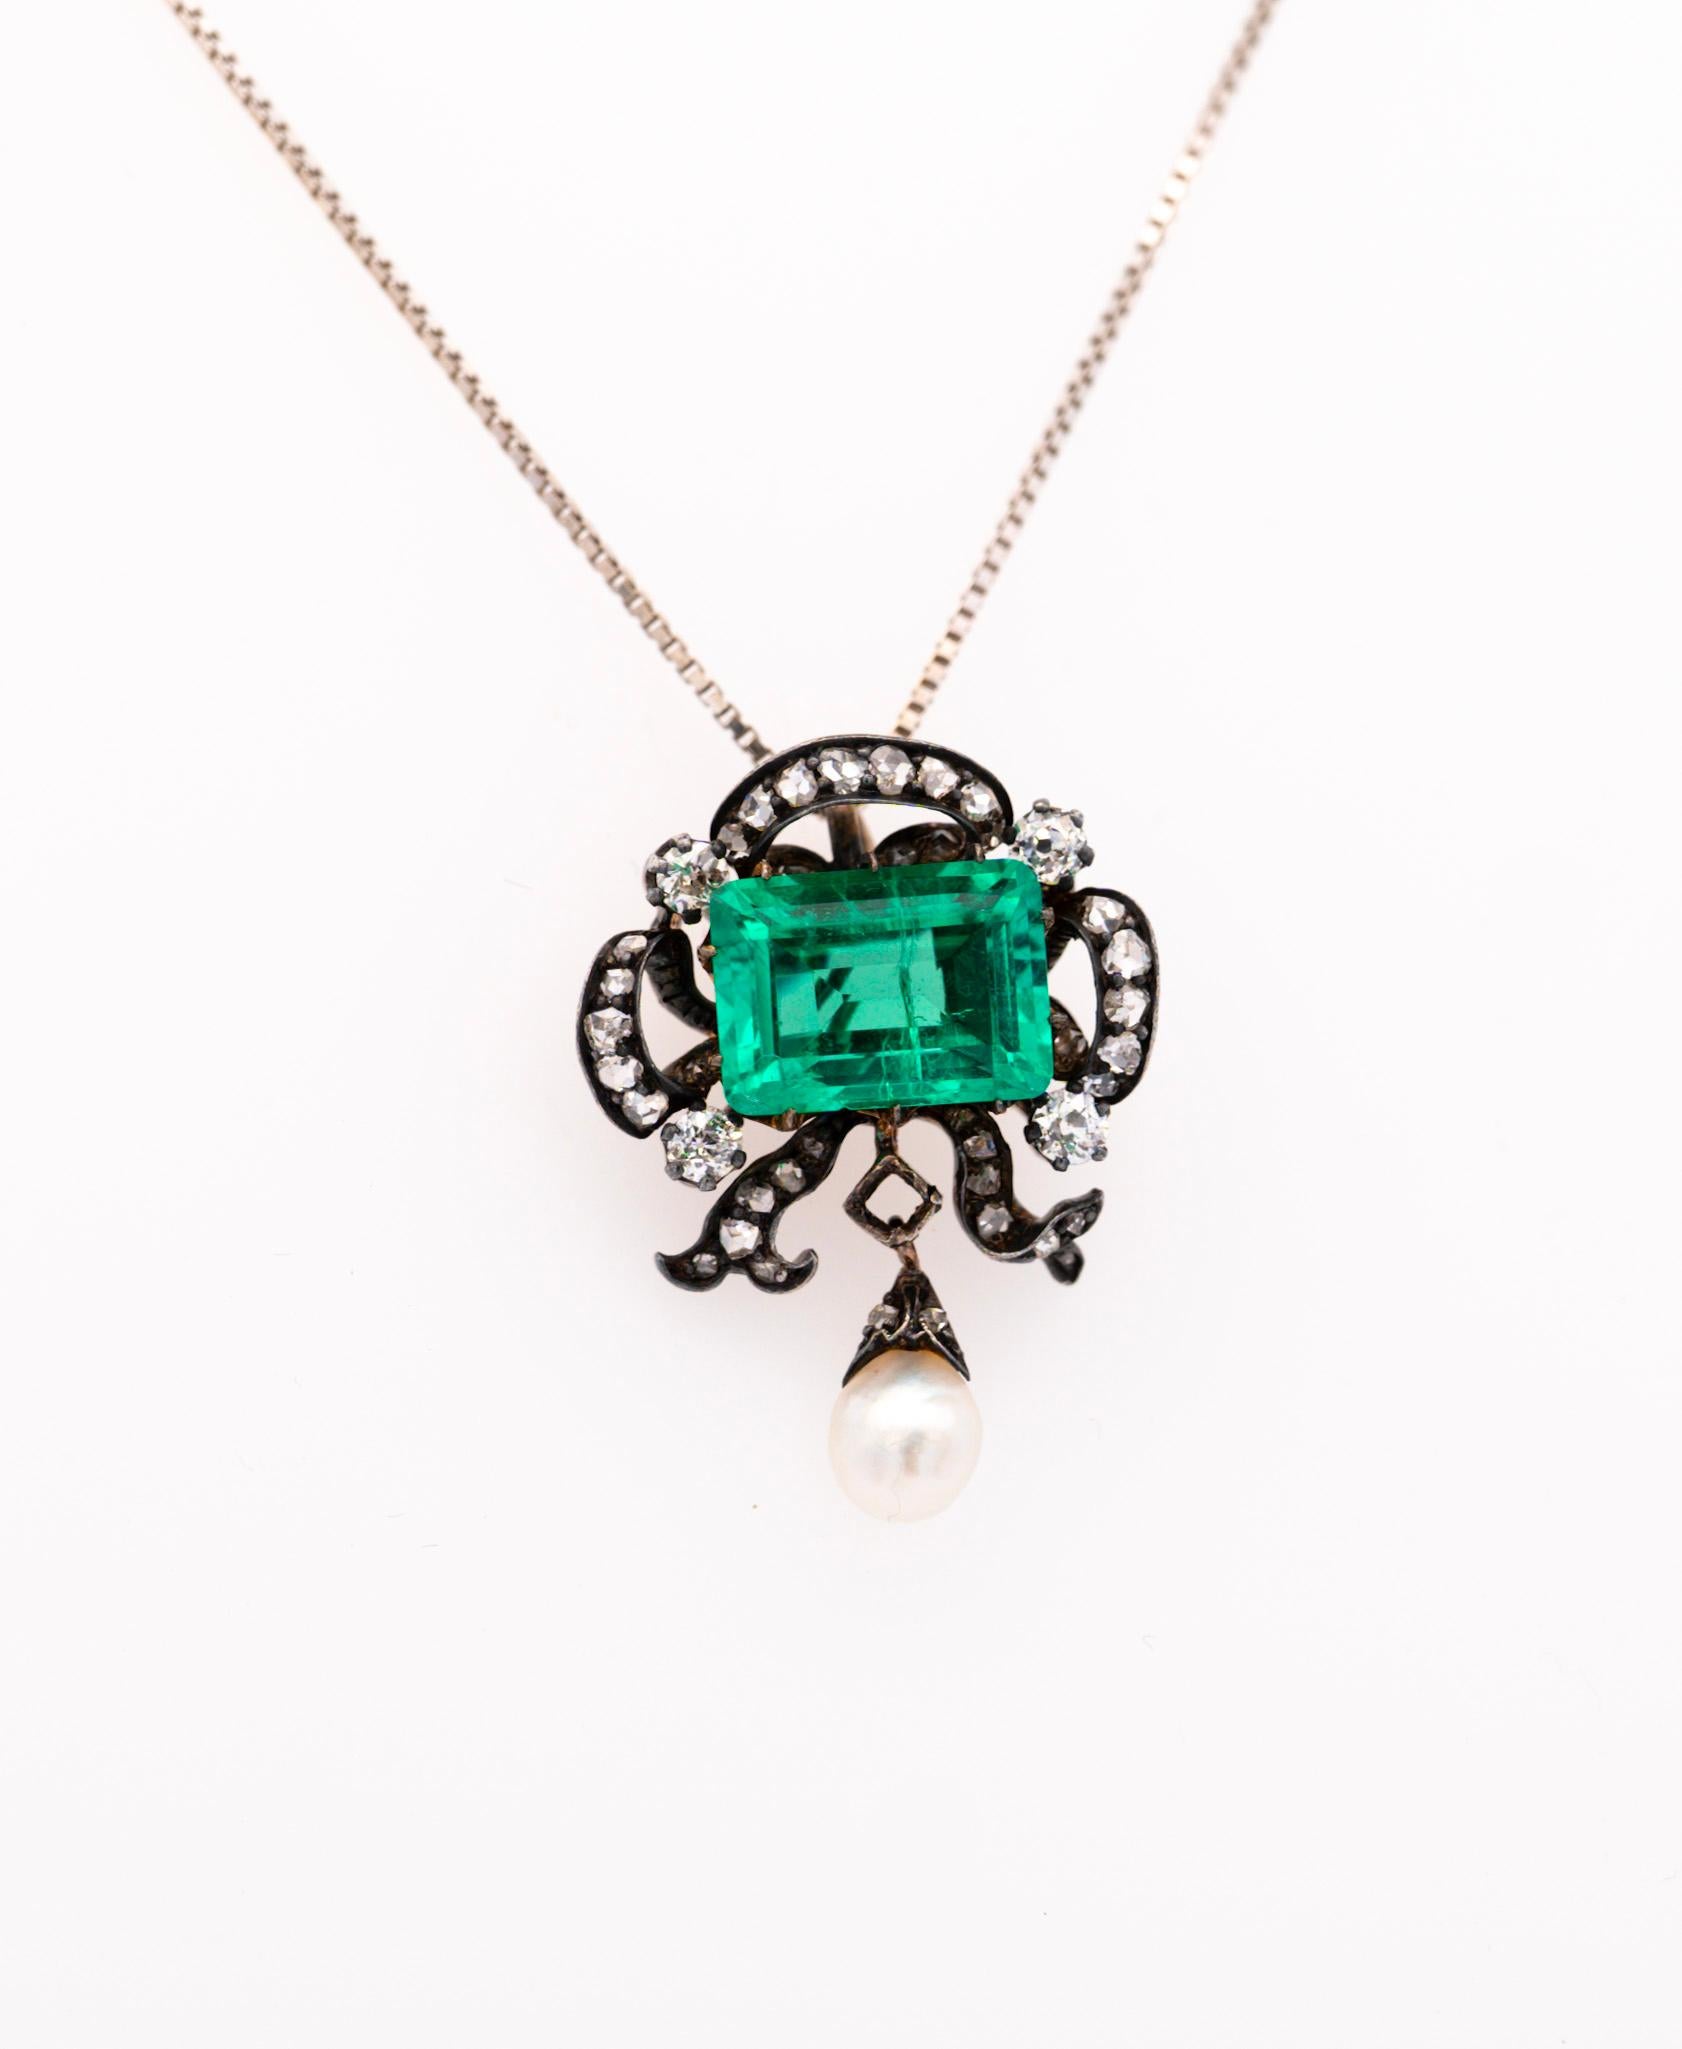 Emerald Cut Antique Victorian Colombia Emerald, Pearl, & Old Mine Diamond Pendant Circa 1880